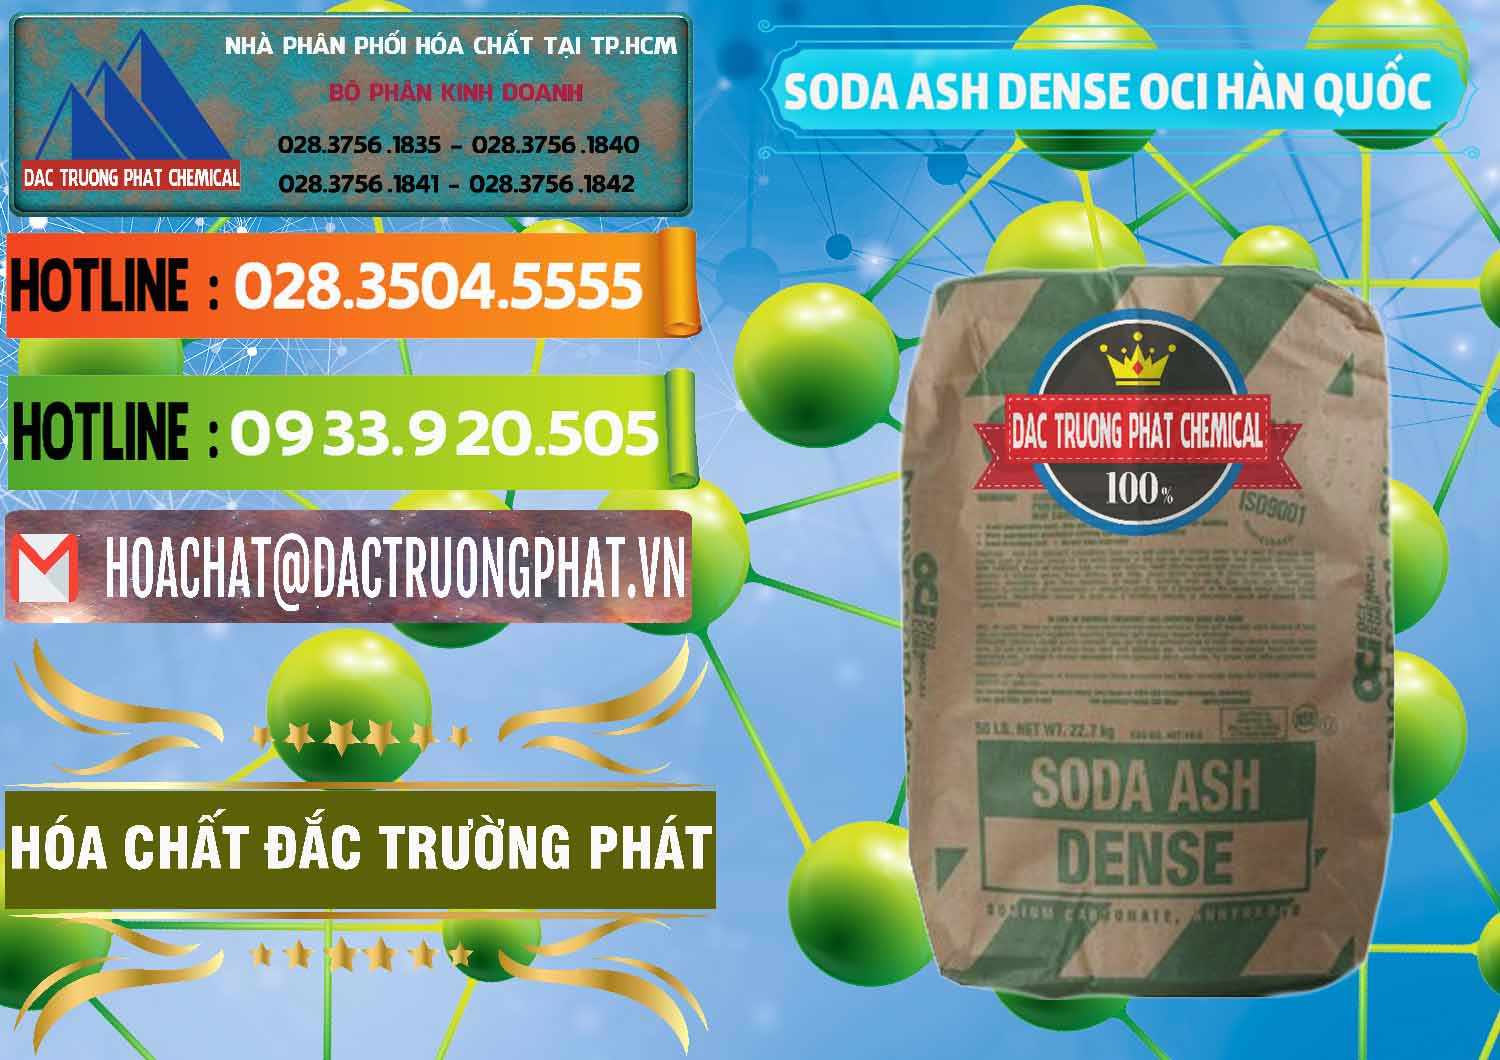 Nơi chuyên bán ( cung ứng ) Soda Ash Dense - NA2CO3 OCI Hàn Quốc Korea - 0338 - Cty phân phối và cung cấp hóa chất tại TP.HCM - cungcaphoachat.com.vn